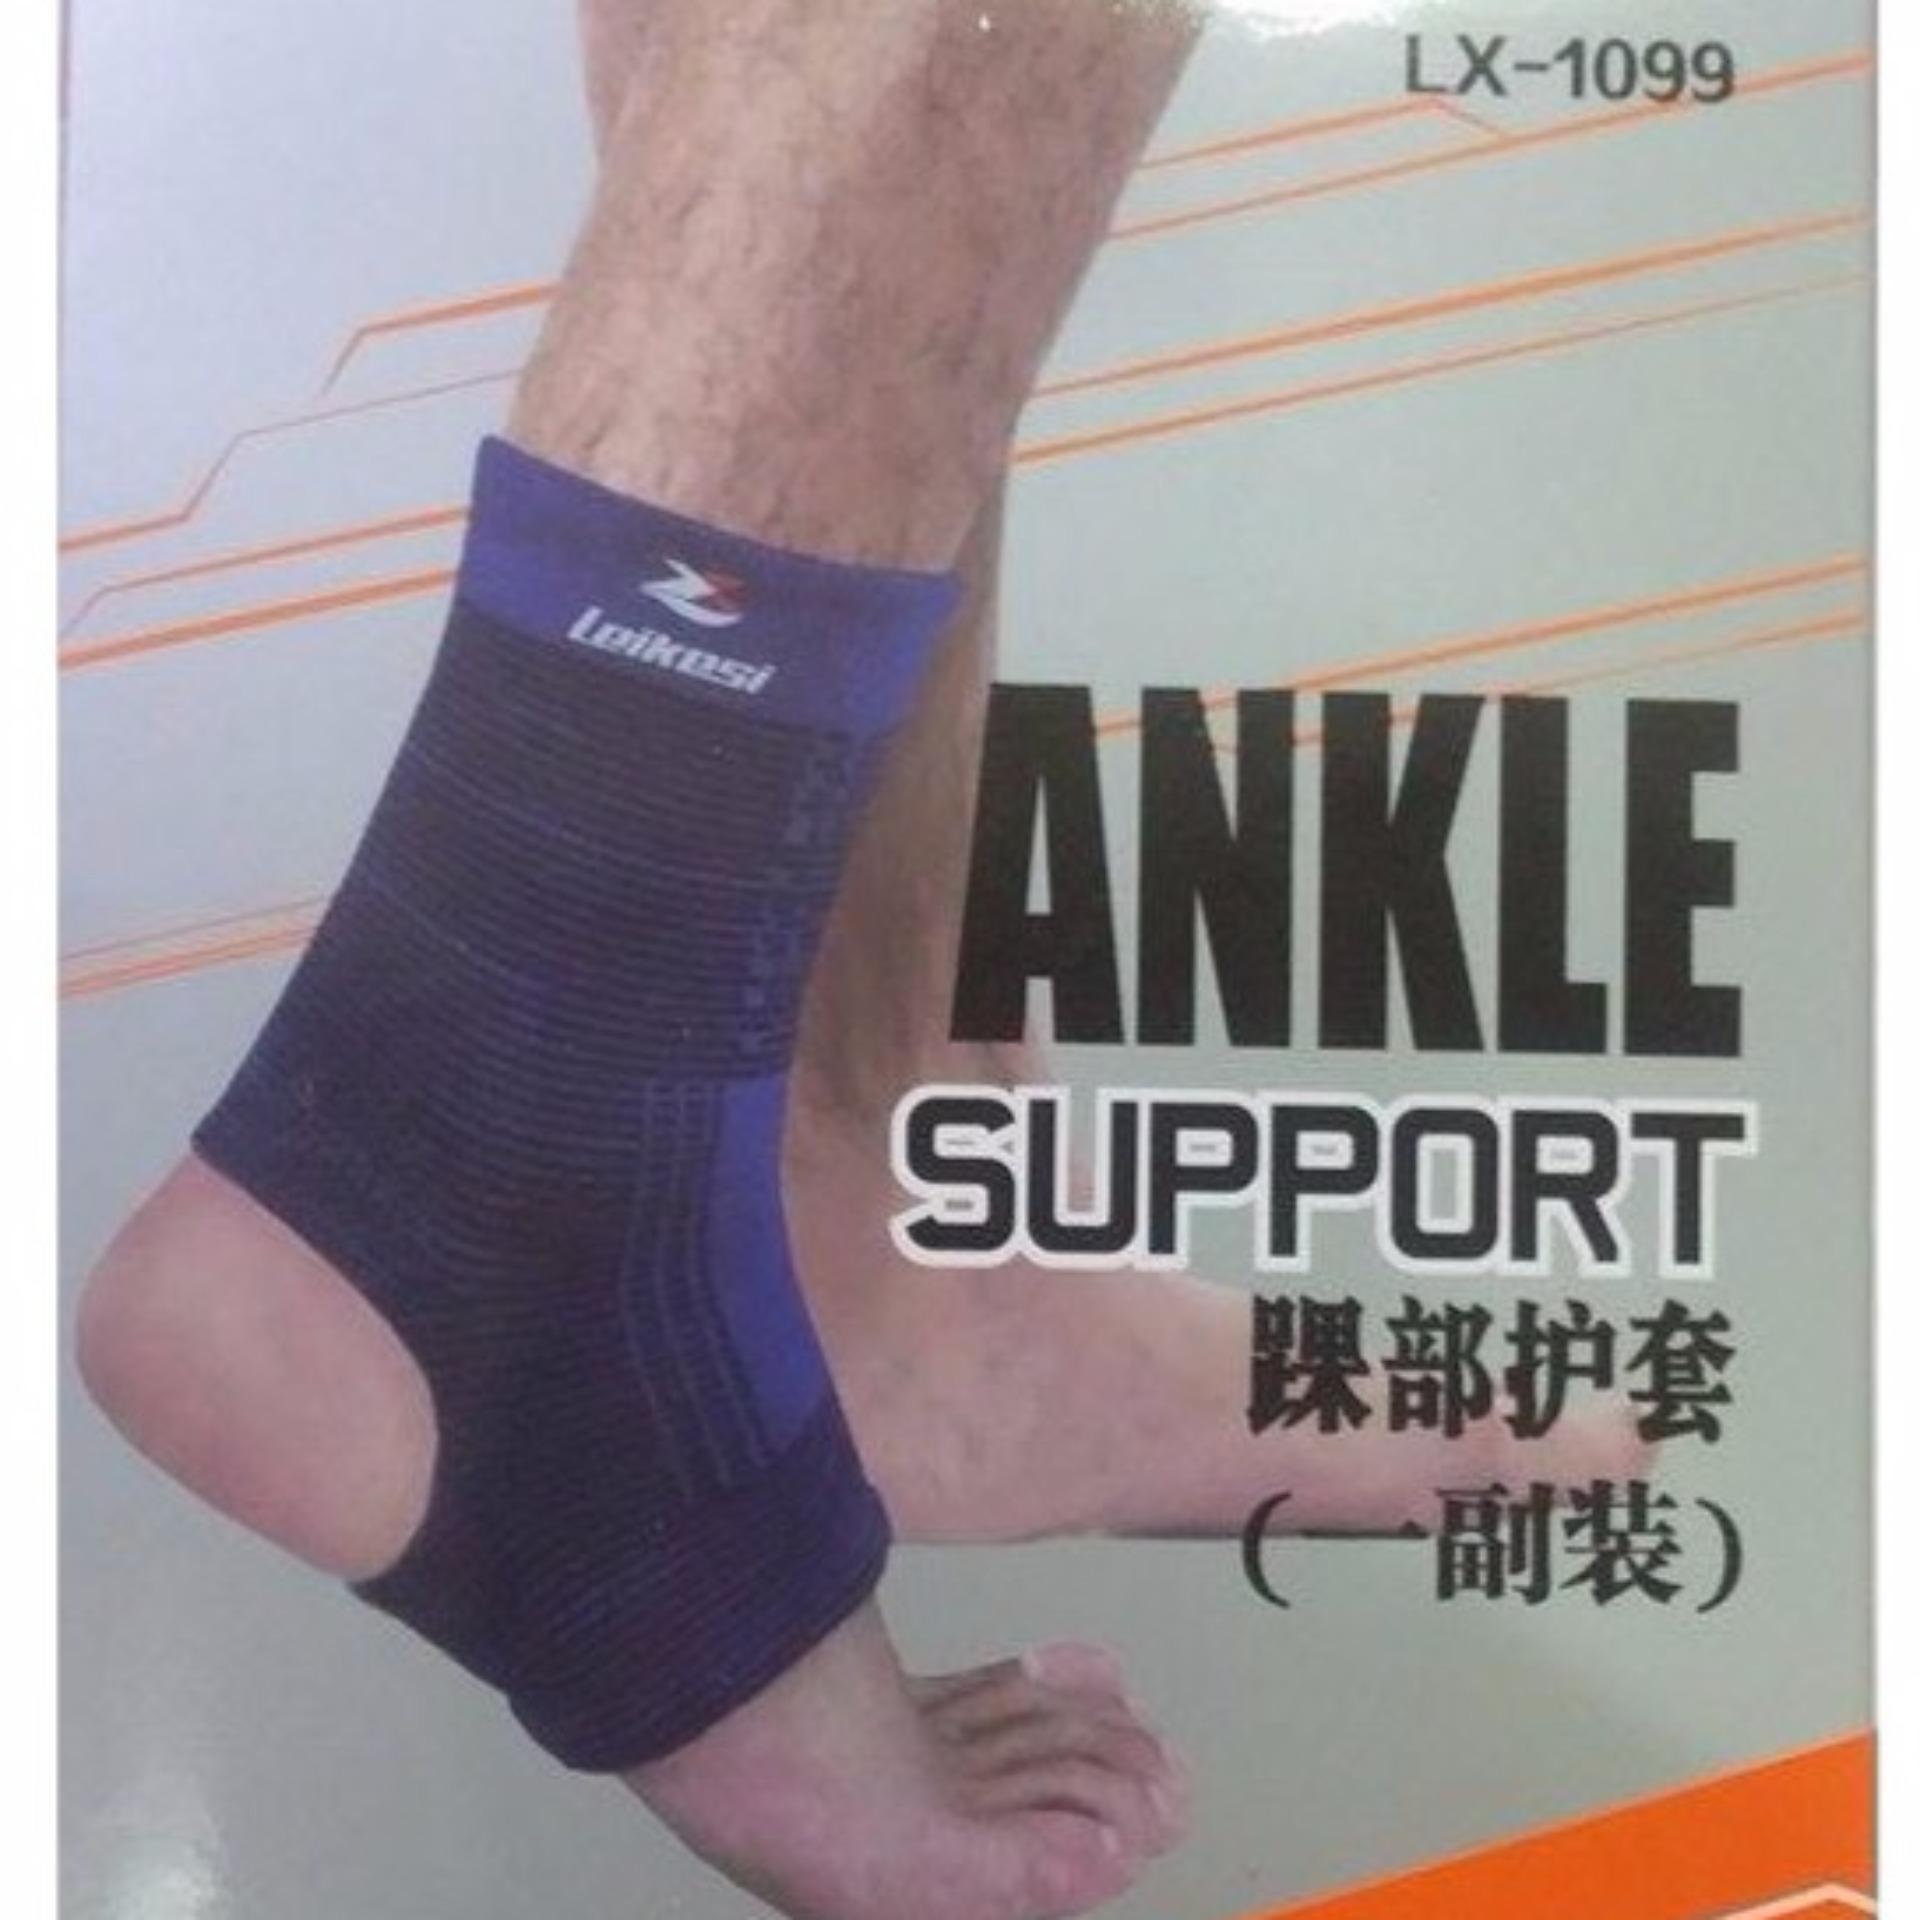 Băng bảo vệ cổ gót chân LX-1099